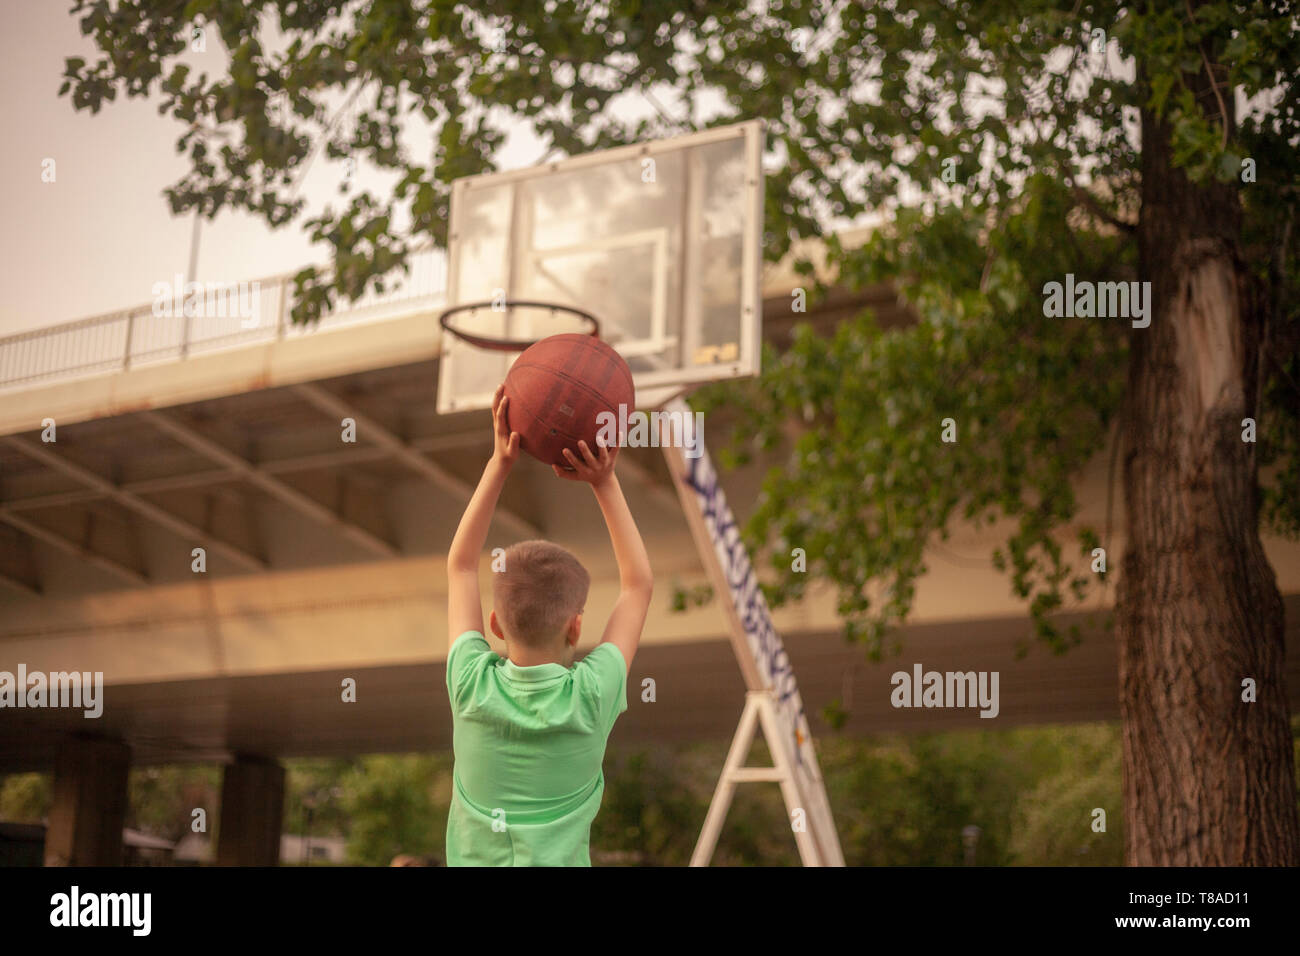 Un chico, jugar baloncesto solos, sosteniendo un balón en sus manos,  disparar a un tablero. cuerpo superior, vista trasera, disparos por la  espalda Fotografía de stock - Alamy